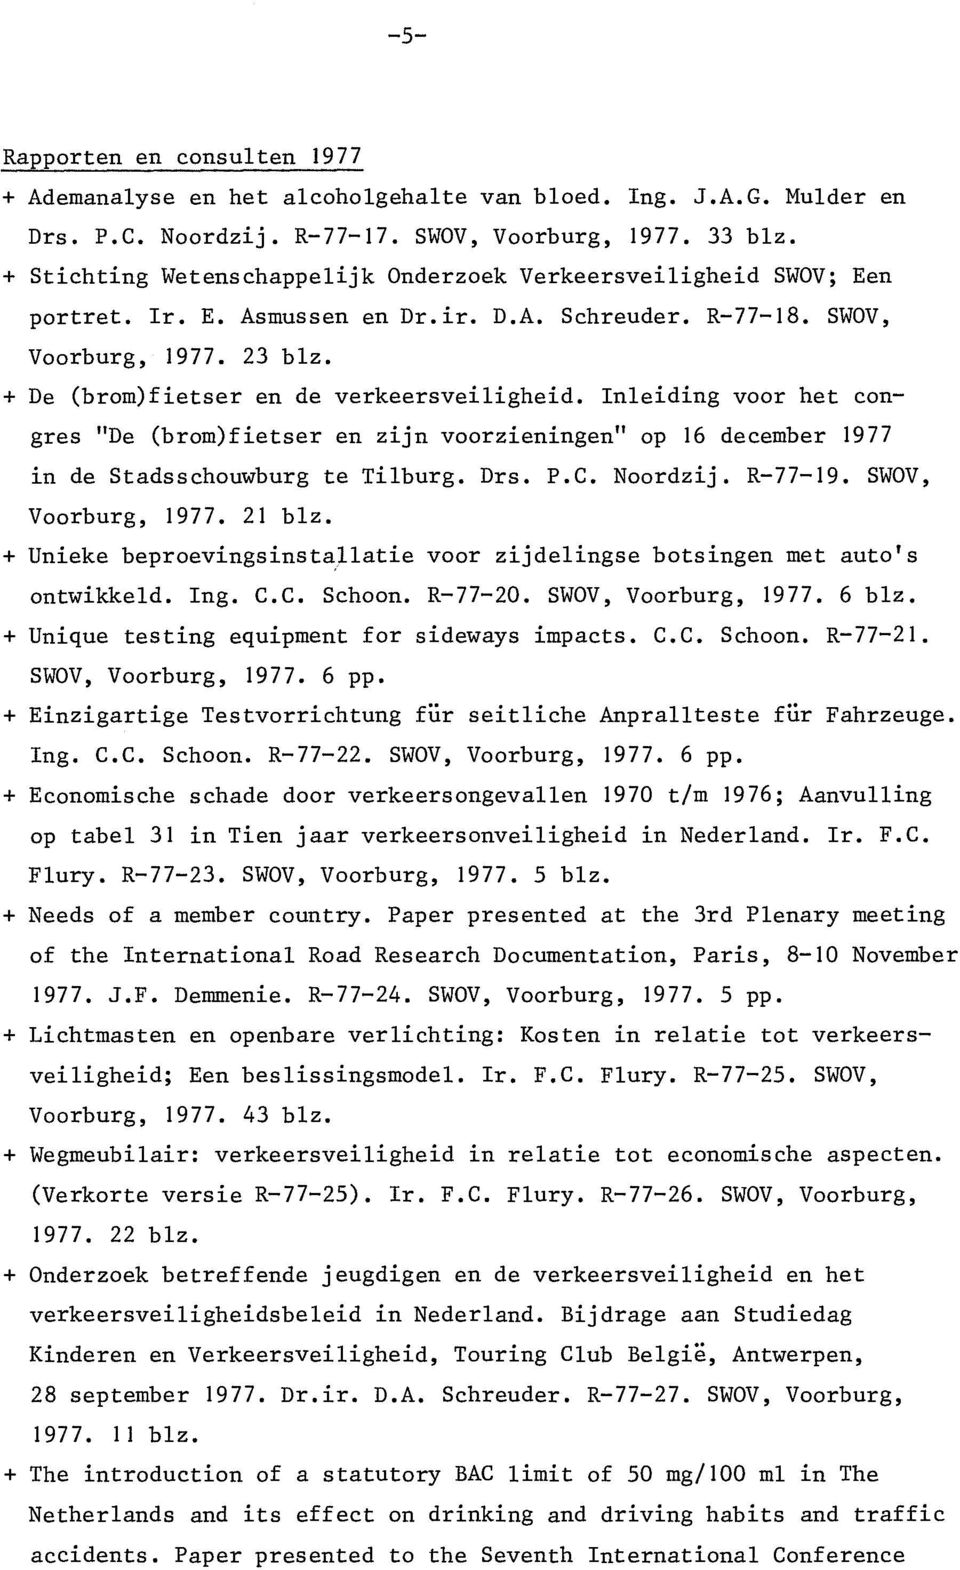 + De (brom)fietser en de verkeersveiligheid. Inleiding voor het congres "De (brom)fietser en zijn voorzieningen" op 16 december 1977 in de Stadsschouwburg te Tilburg. Drs. P.C. Noordzij. R-77-19.